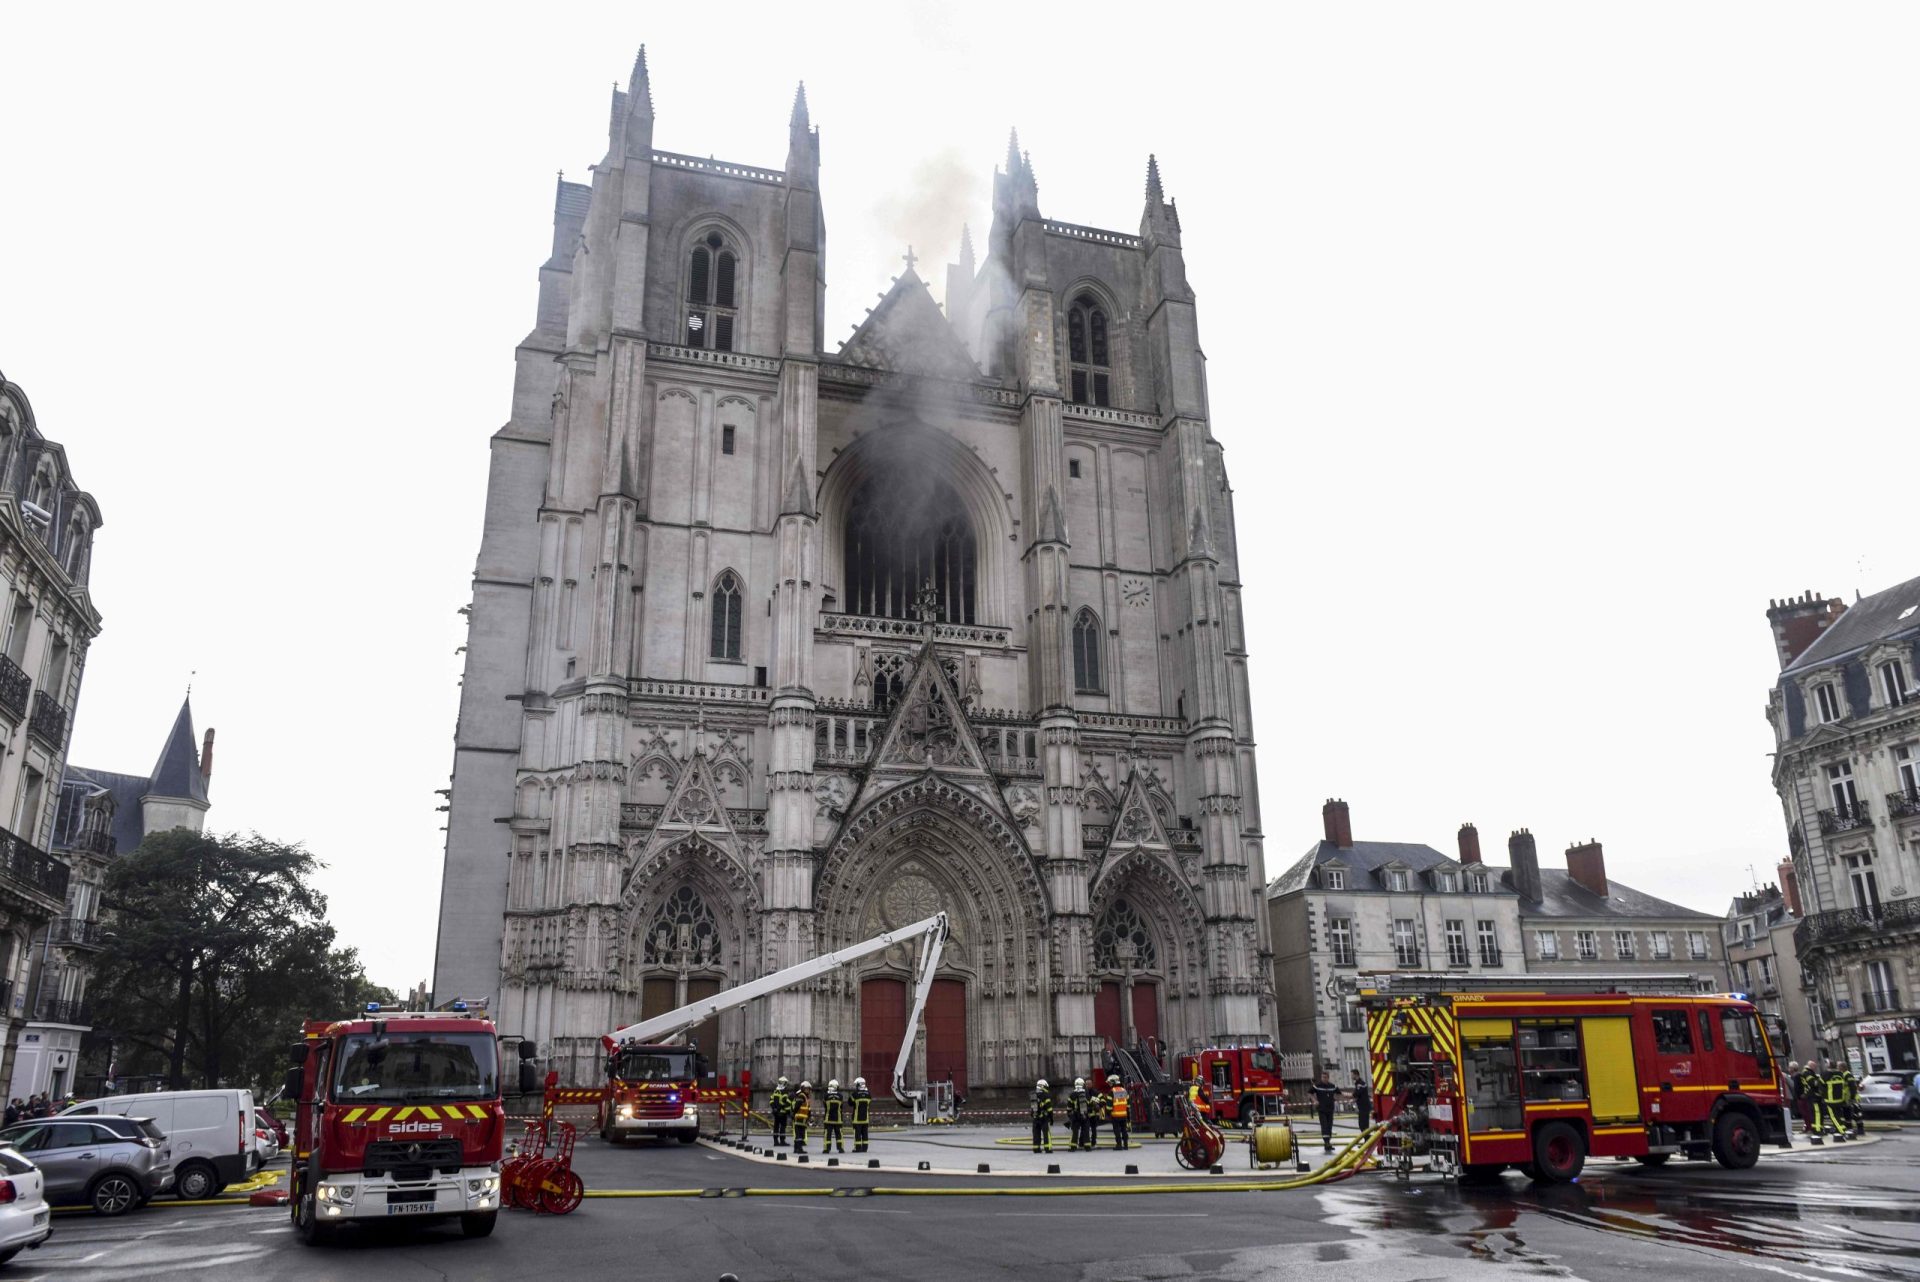 Incêndio na Catedral de Nantes sob controlo. Autoridades suspeitam de ato criminoso